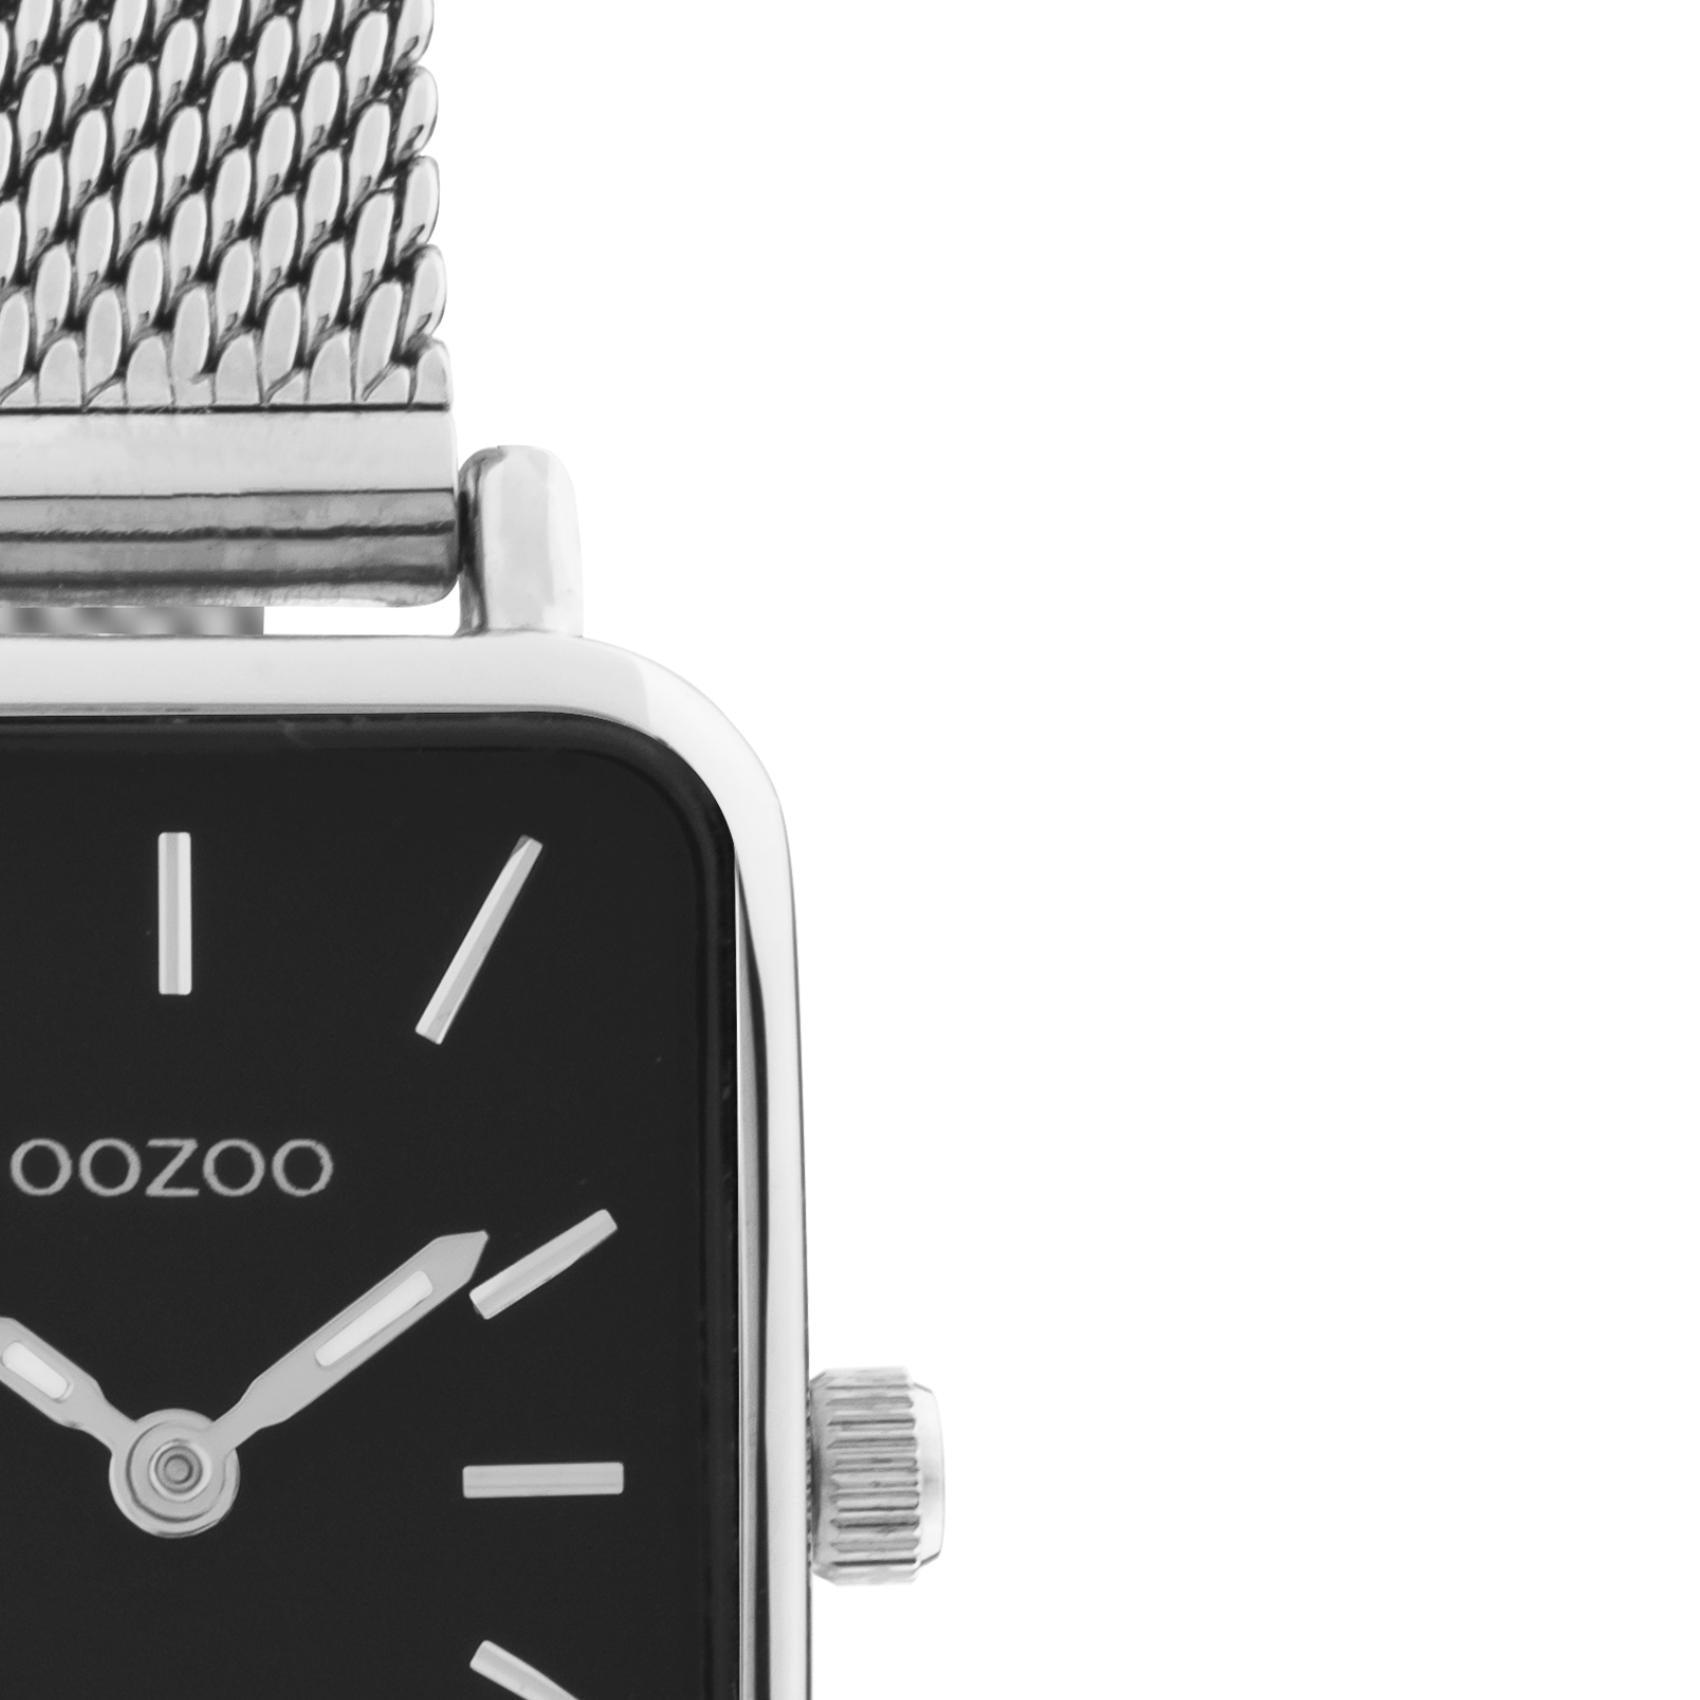 Τετράγωνο ρολόι Oozoo Vintage C20267 με ασημί ατσάλινο μπρασελέ,μαύρο καντράν διαστάσεων 21x26mm και μηχανισμό μπαταρίας quartz.